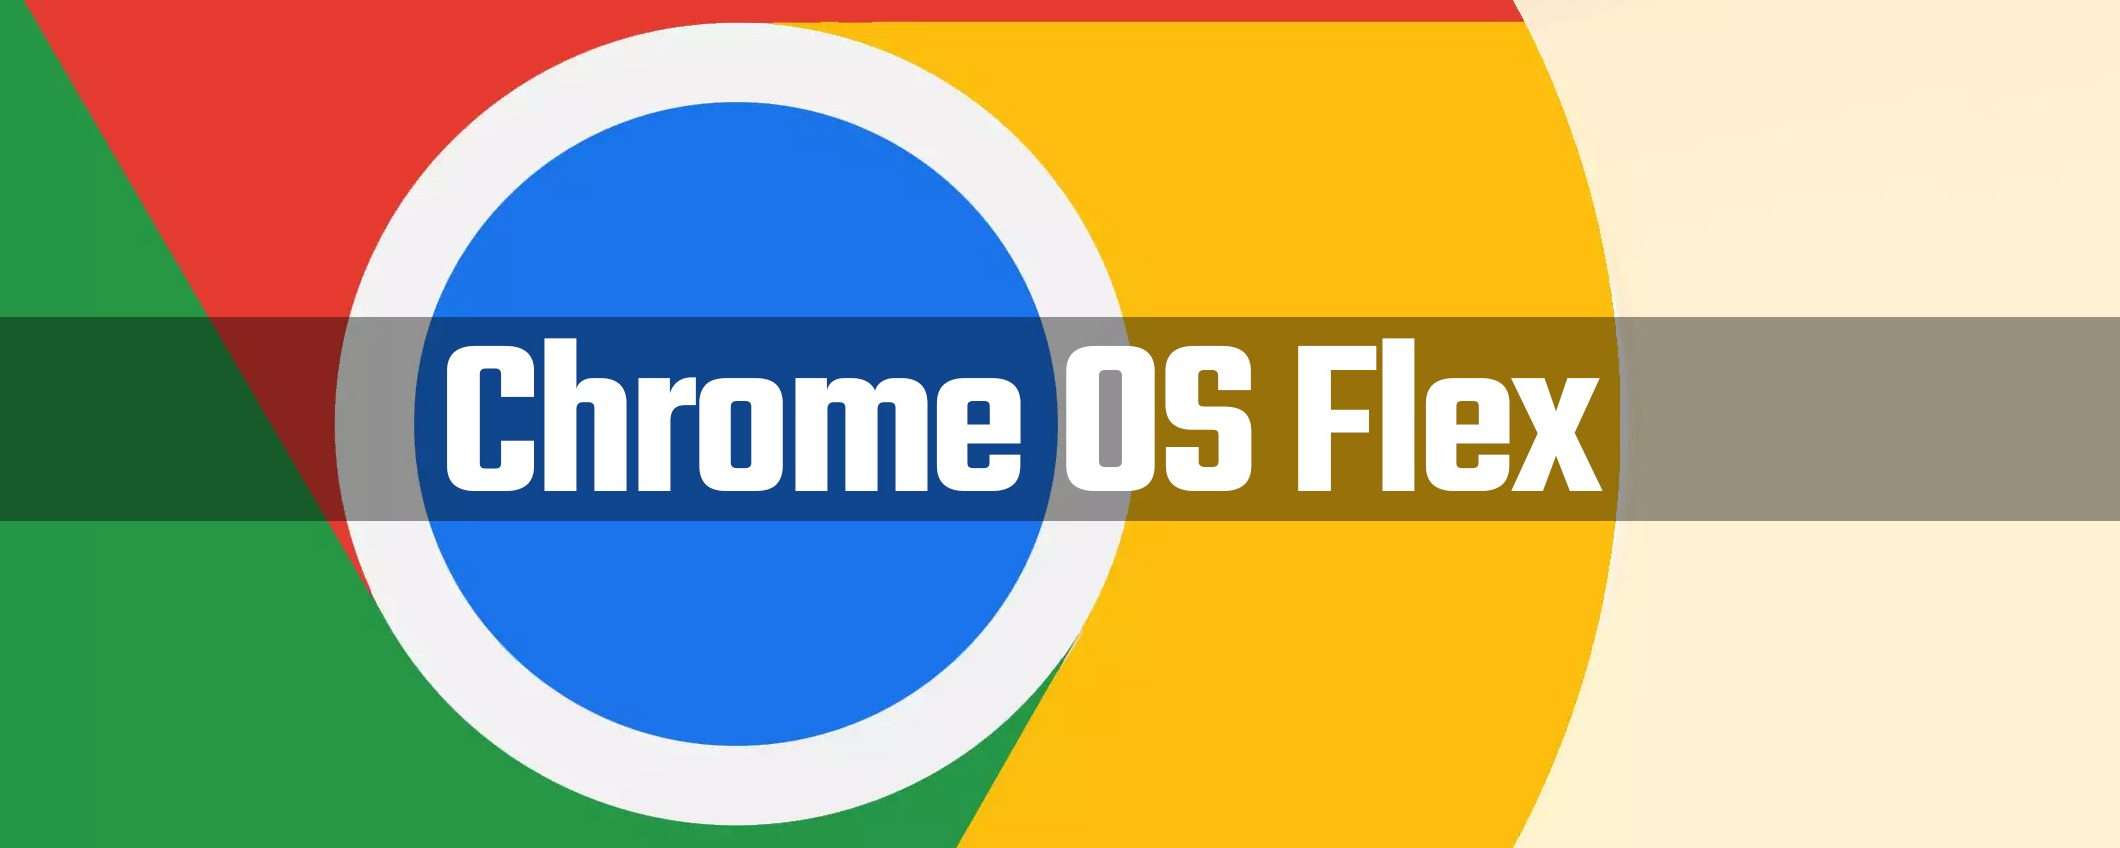 ChromeOS Flex disponibile per PC e Mac